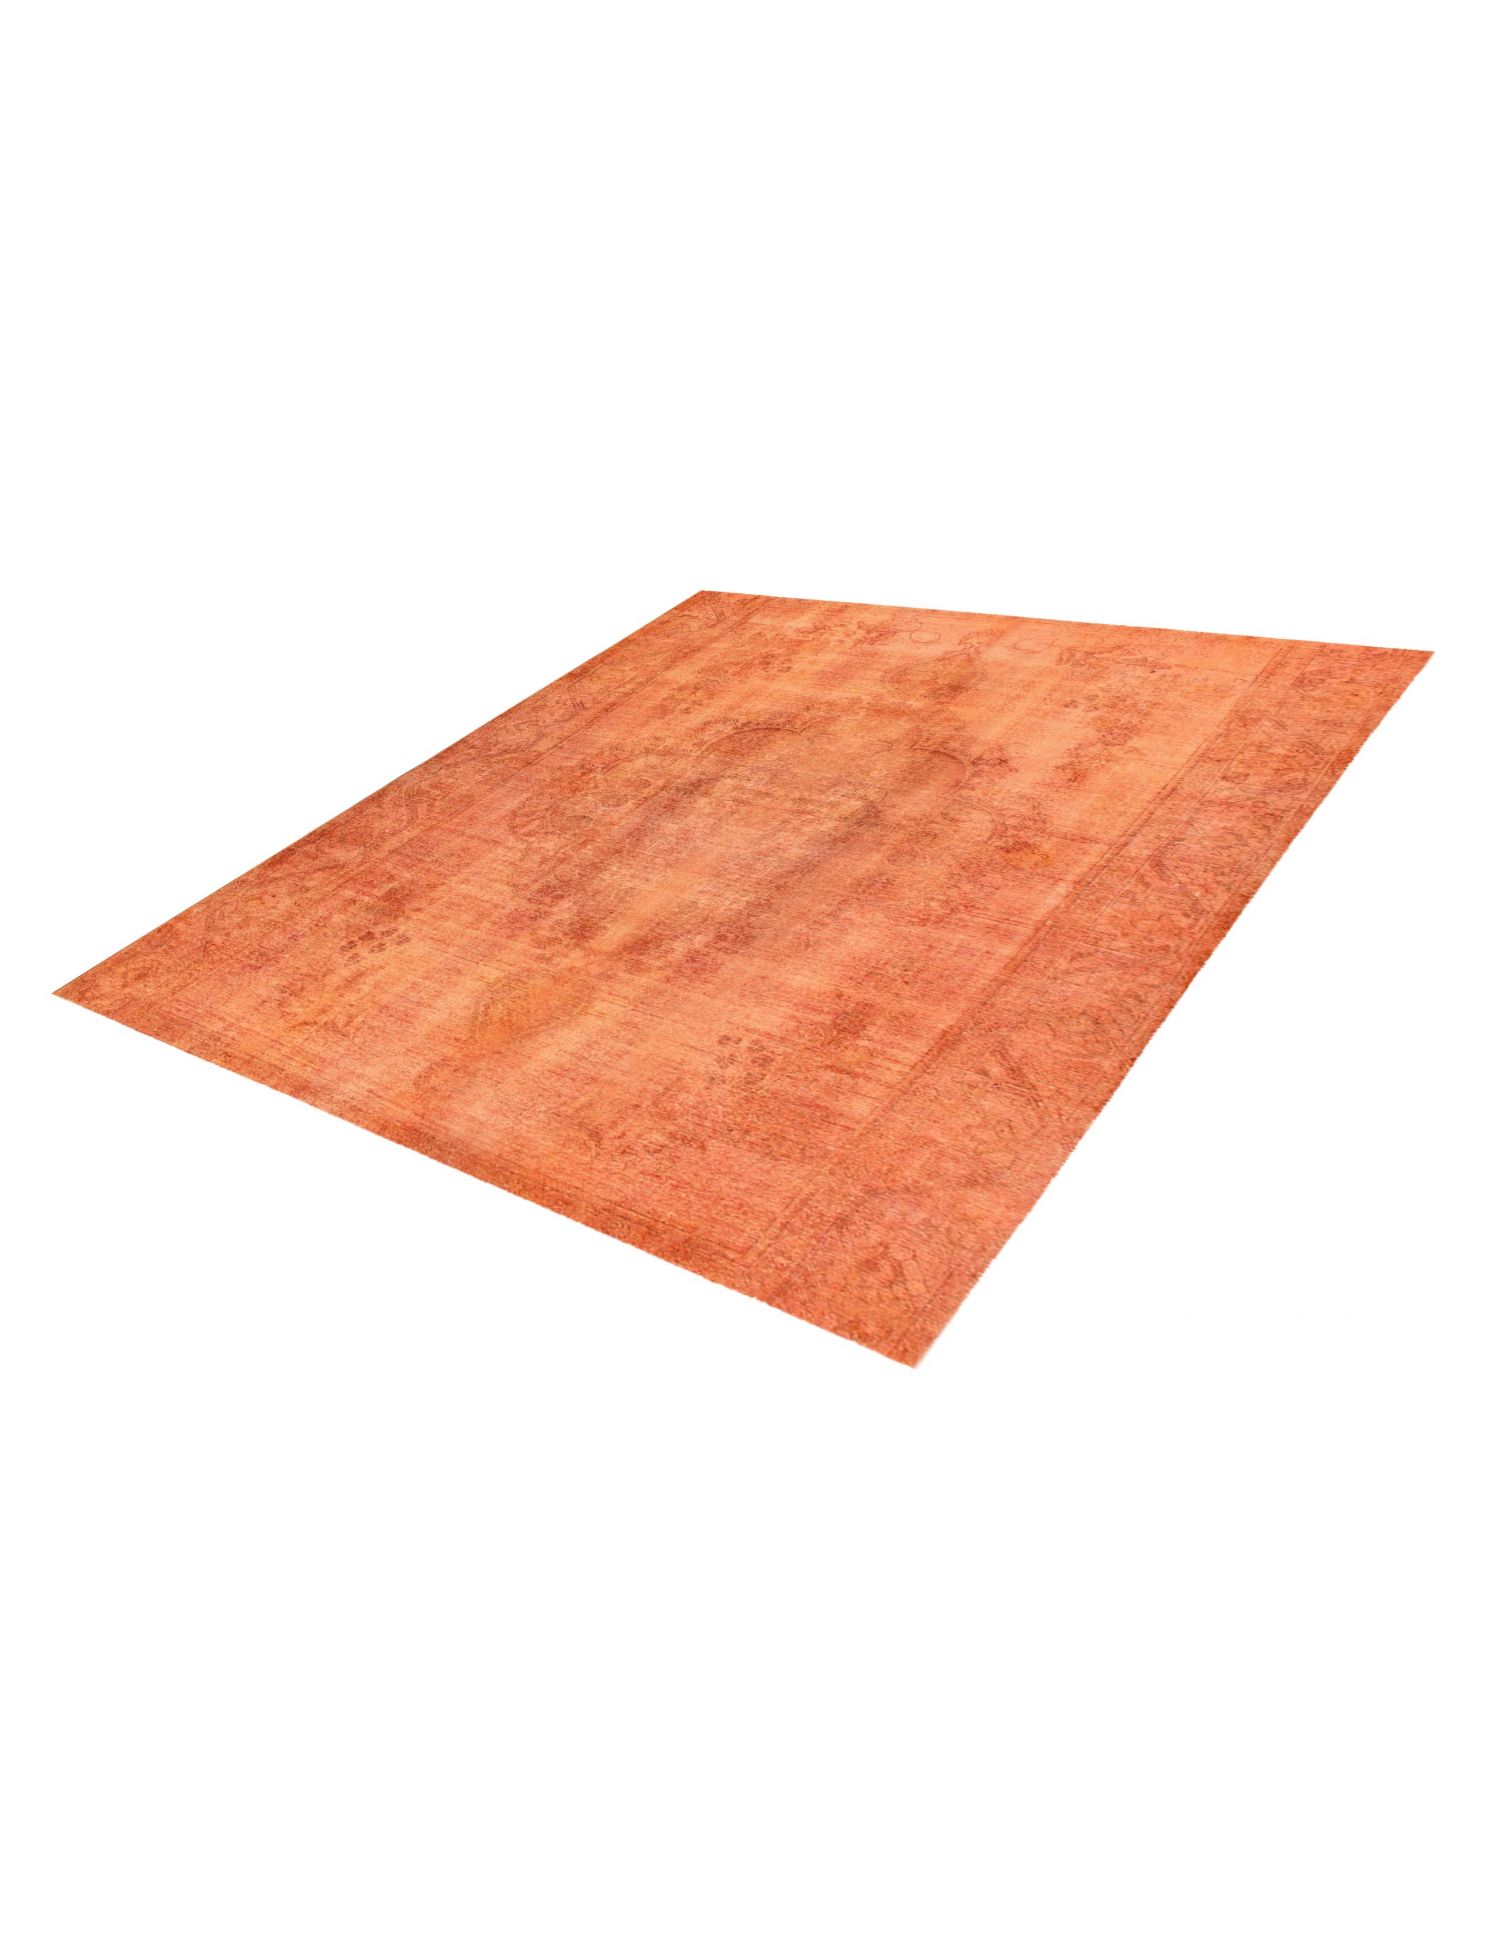 Persischer Vintage Teppich  orange <br/>285 x 285 cm